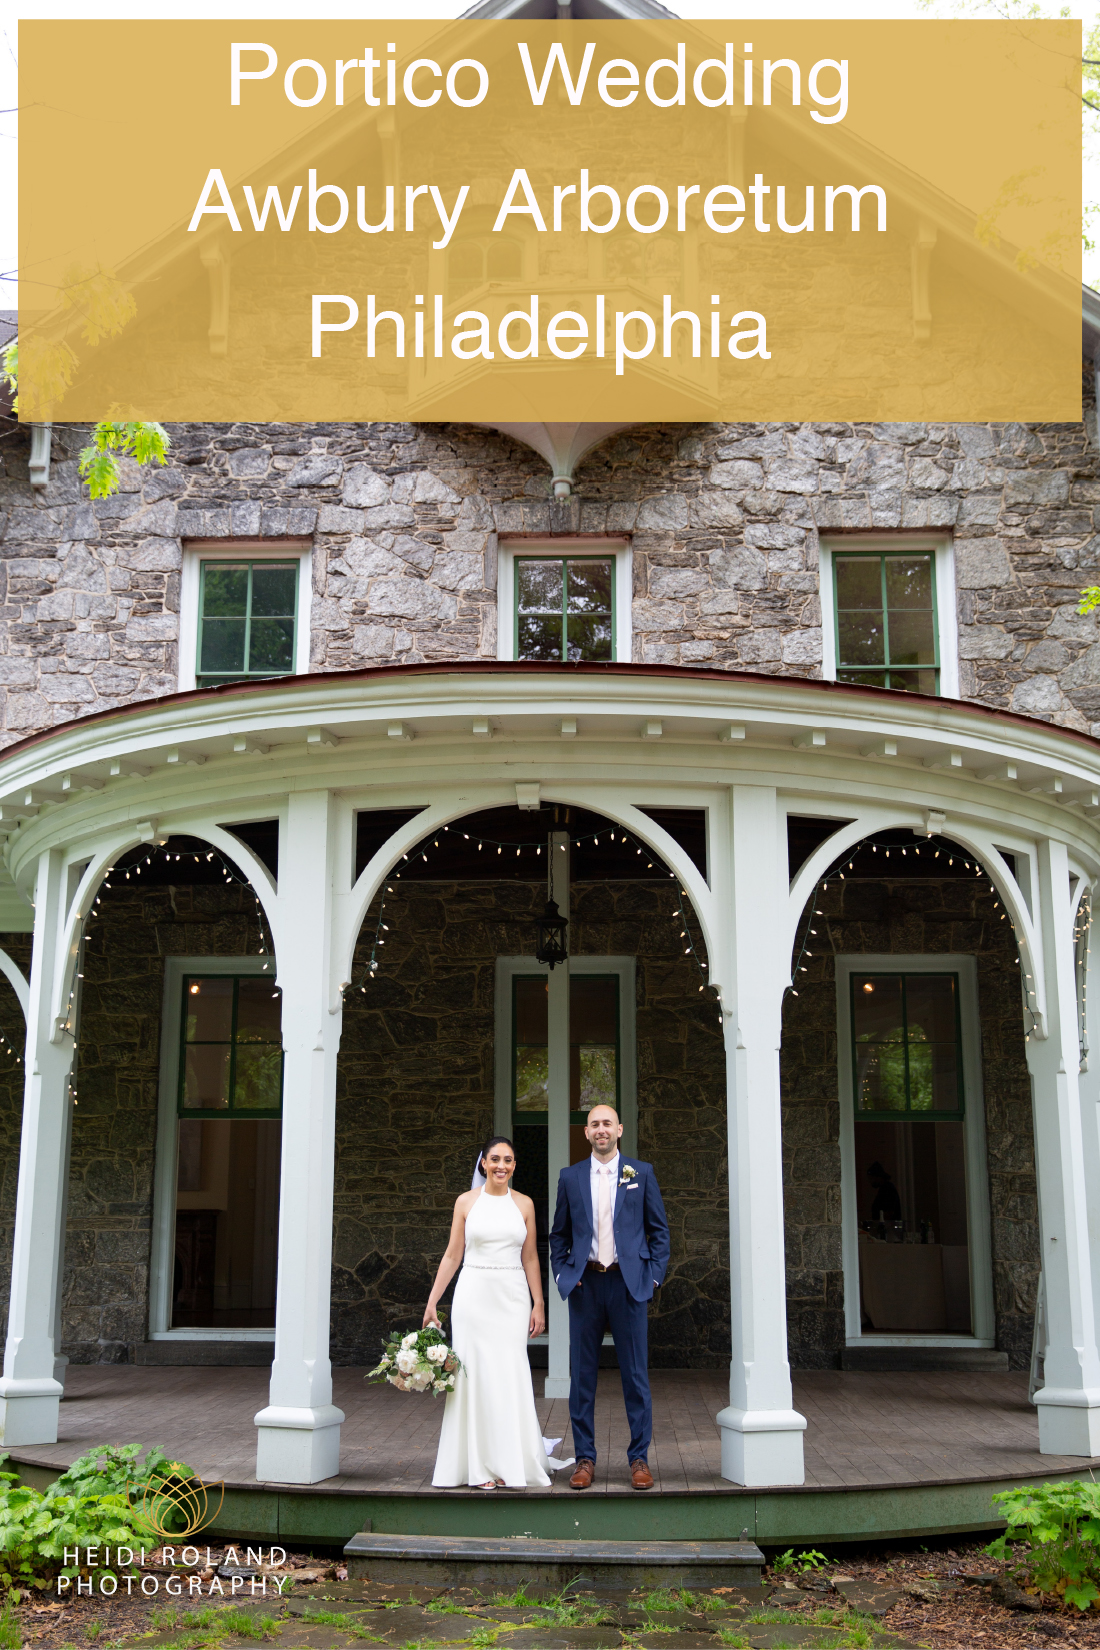 Portico Garden Wedding Philadelphia bride and groom on porch